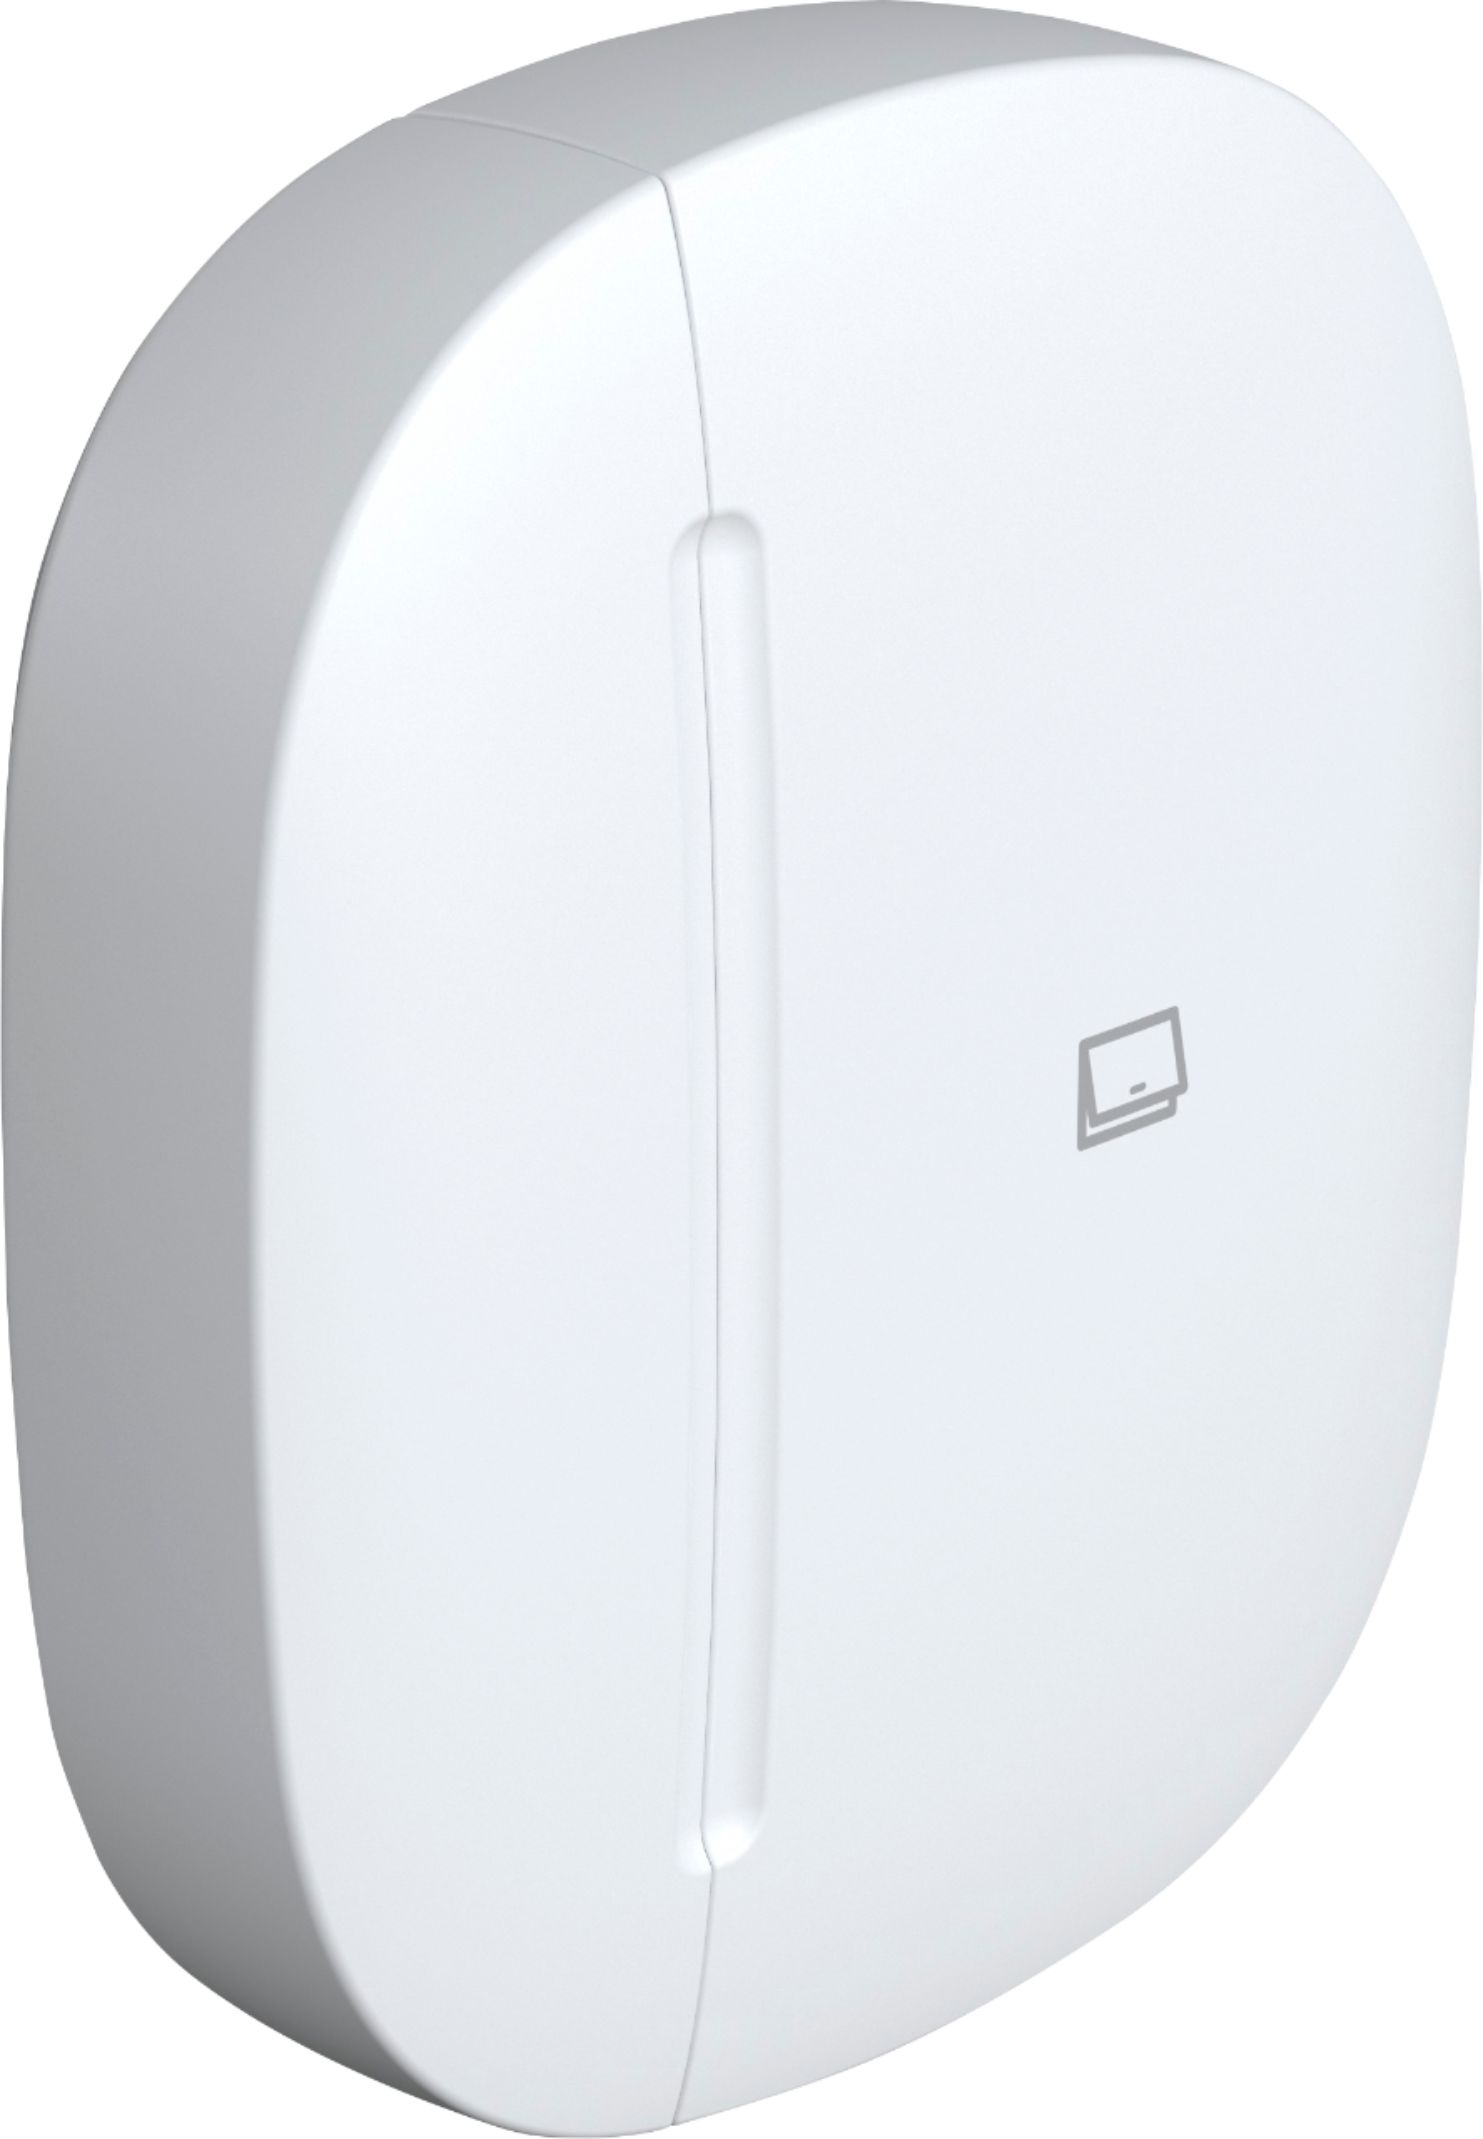 Samsung SmartThings Item Tracker White SM-V110AZWAATT - Best Buy